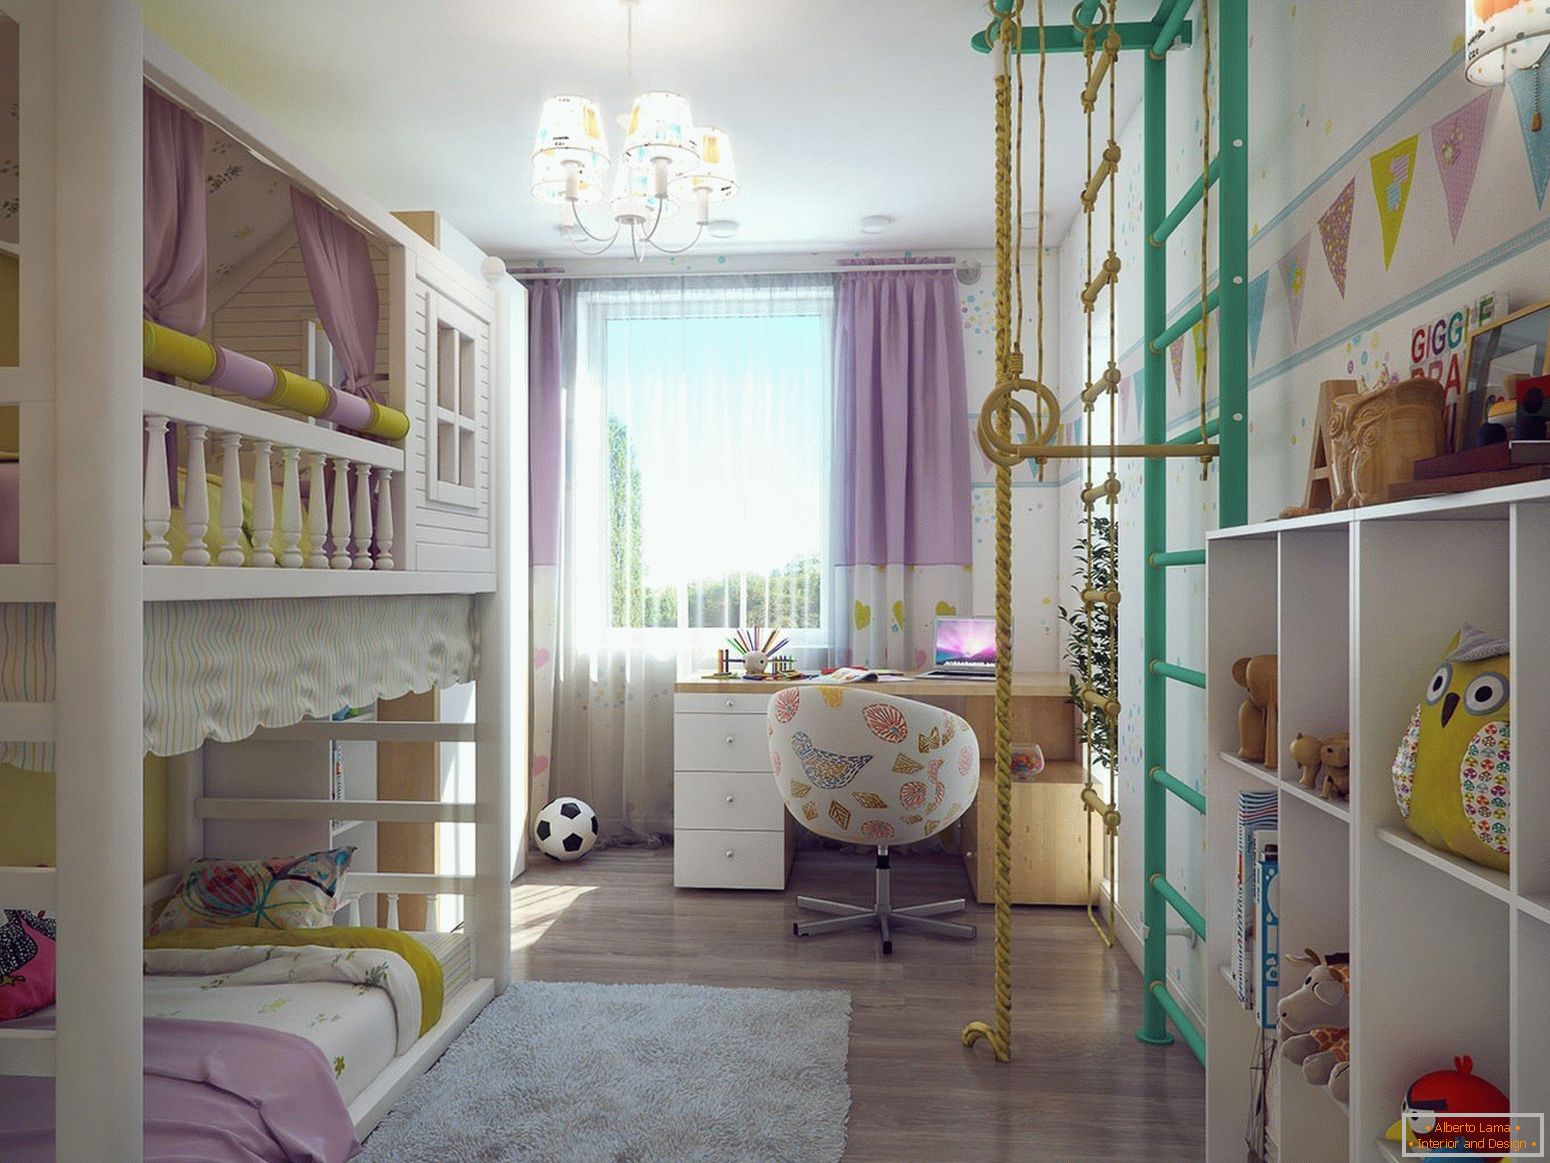 Detská izba pre dve deti